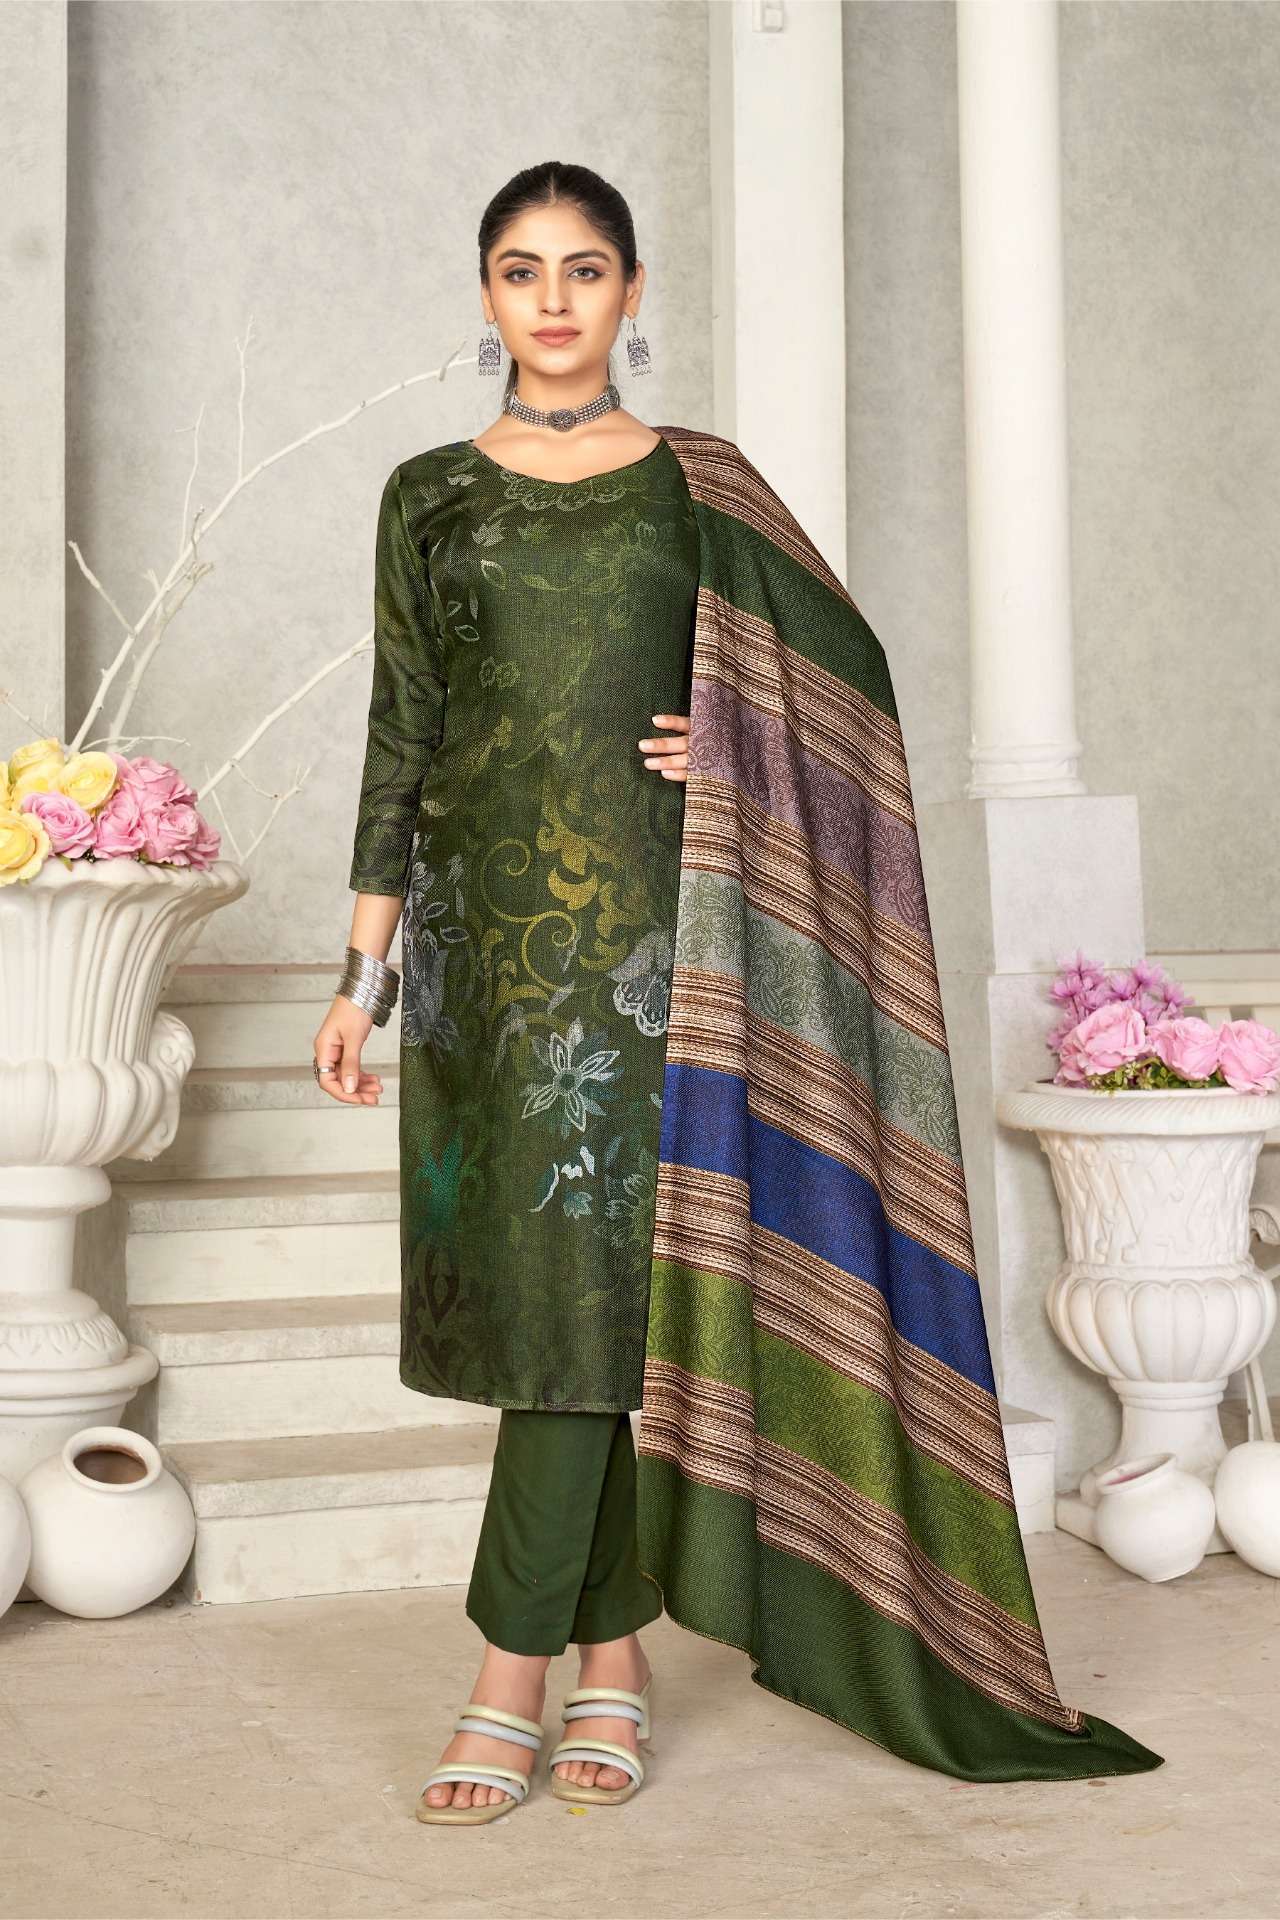 Gourgious & Decent Off white & Gold Colour Combination Nikkah Dresses Ideas  2022 | Nikkah dress, Beautiful pakistani dresses, Party wear gown images